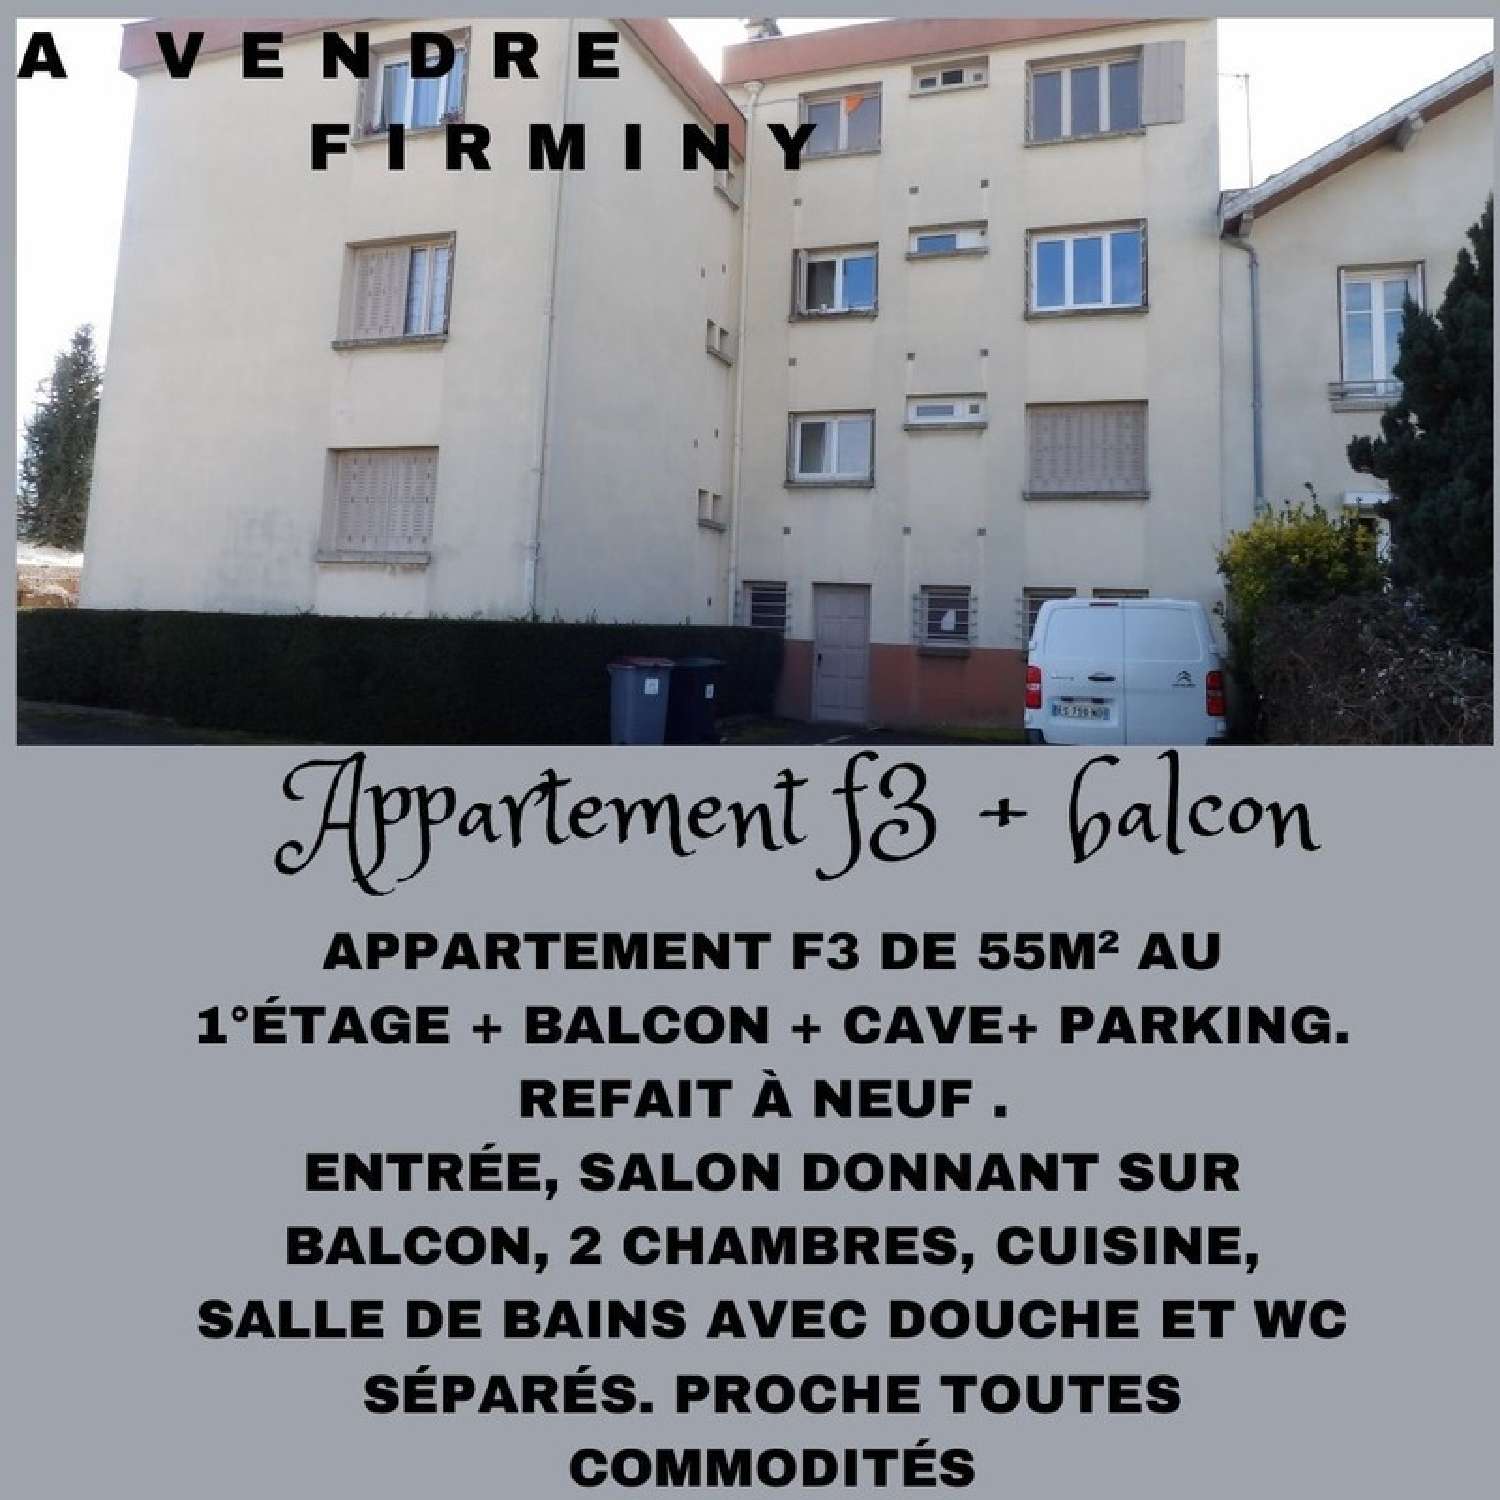  kaufen Wohnung/ Apartment Firminy Loire 1